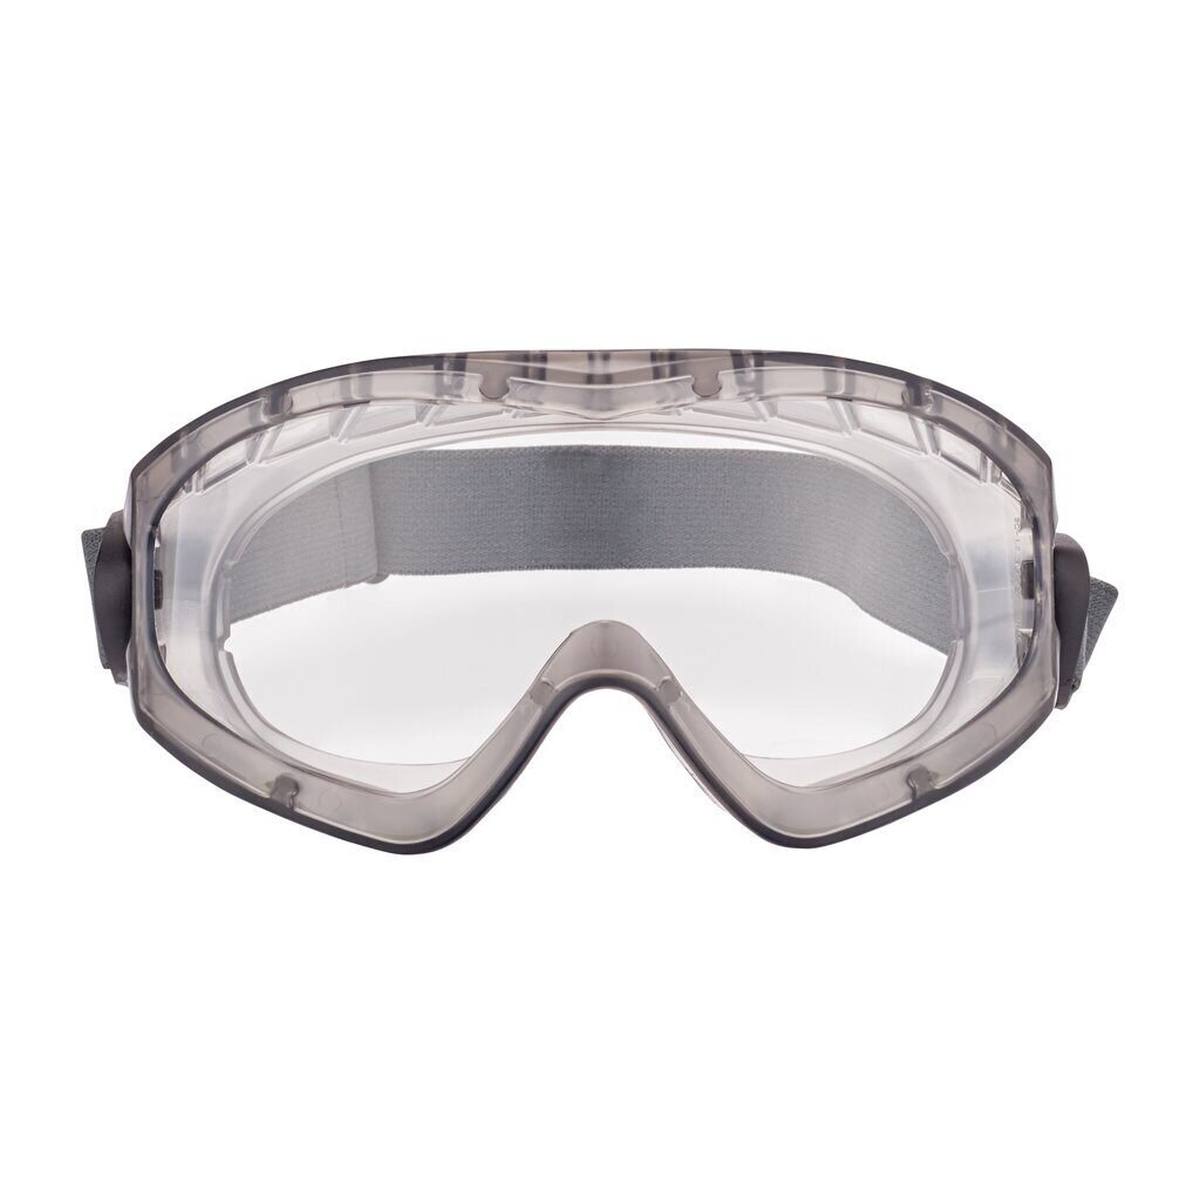 3M 2891S-SGAF Vollsichtbrille, ohne Belüftungsschlitz (gasdicht), verstellbare Gelenke, Anti-Fog Beschichtung